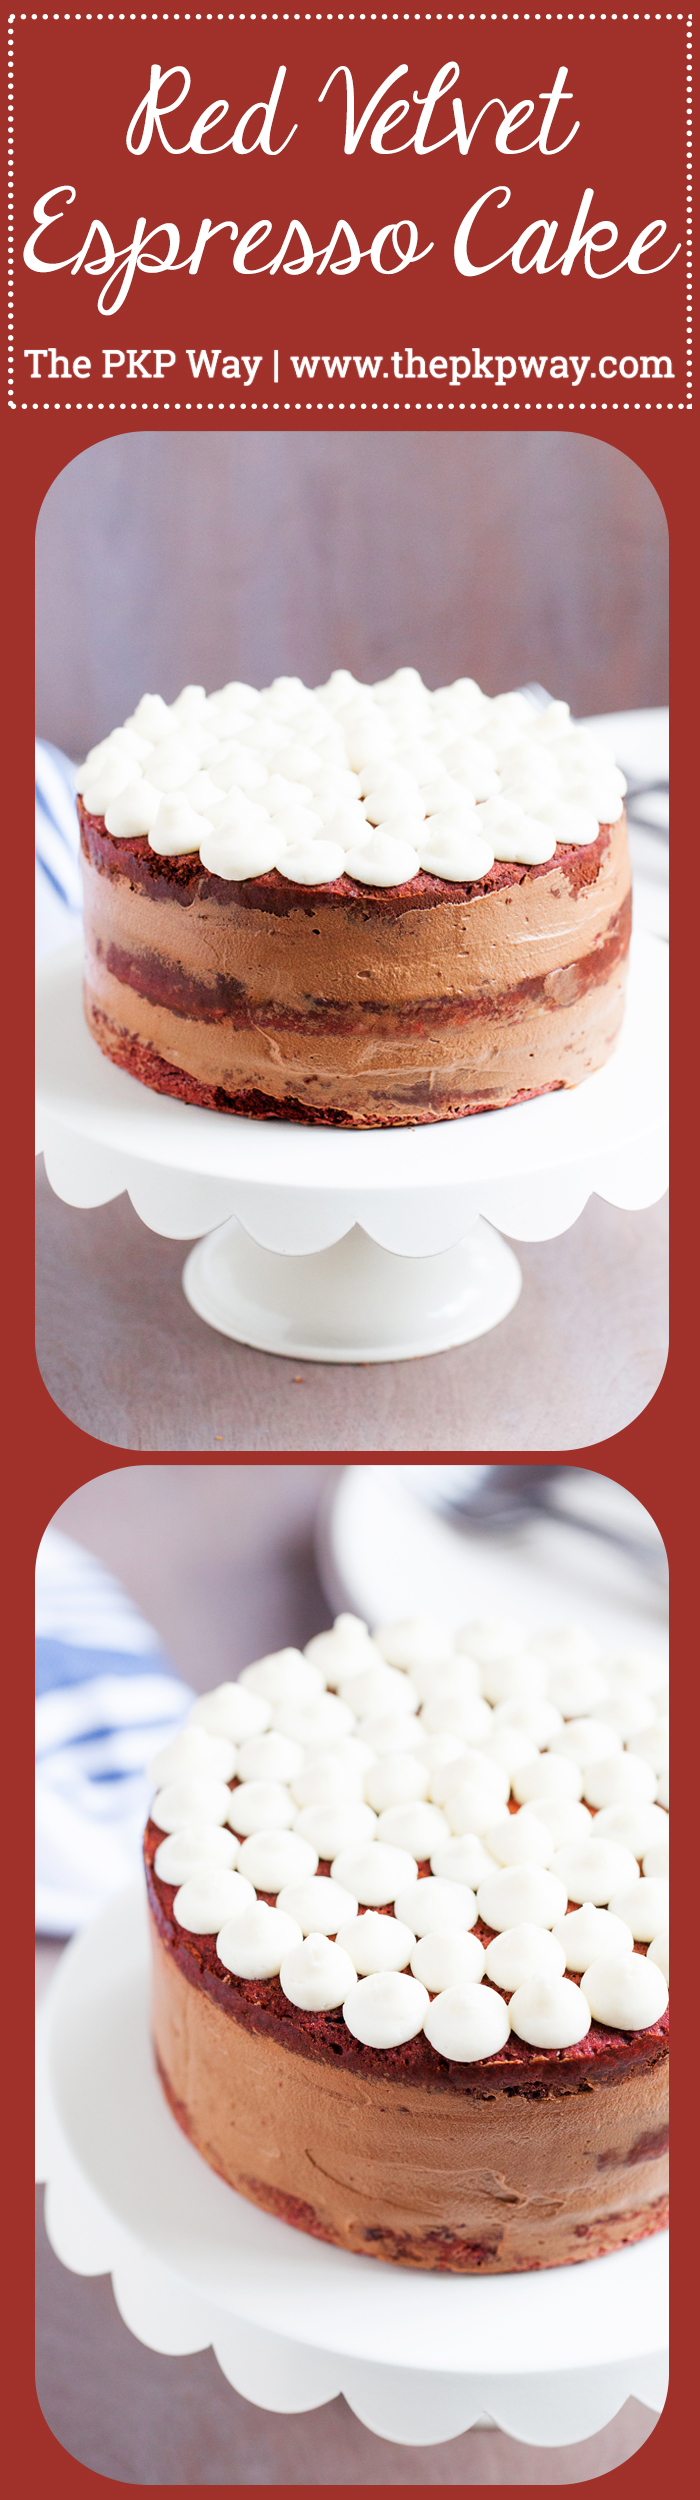 to-die-pro kombinaci, tento červený sametový Espresso dort má tři lahodné vrstvy červeného sametového dortu, naplněné načechraným espresso krémem mezi nimi,a přelité sladkou a pikantní smetanovou polevou!